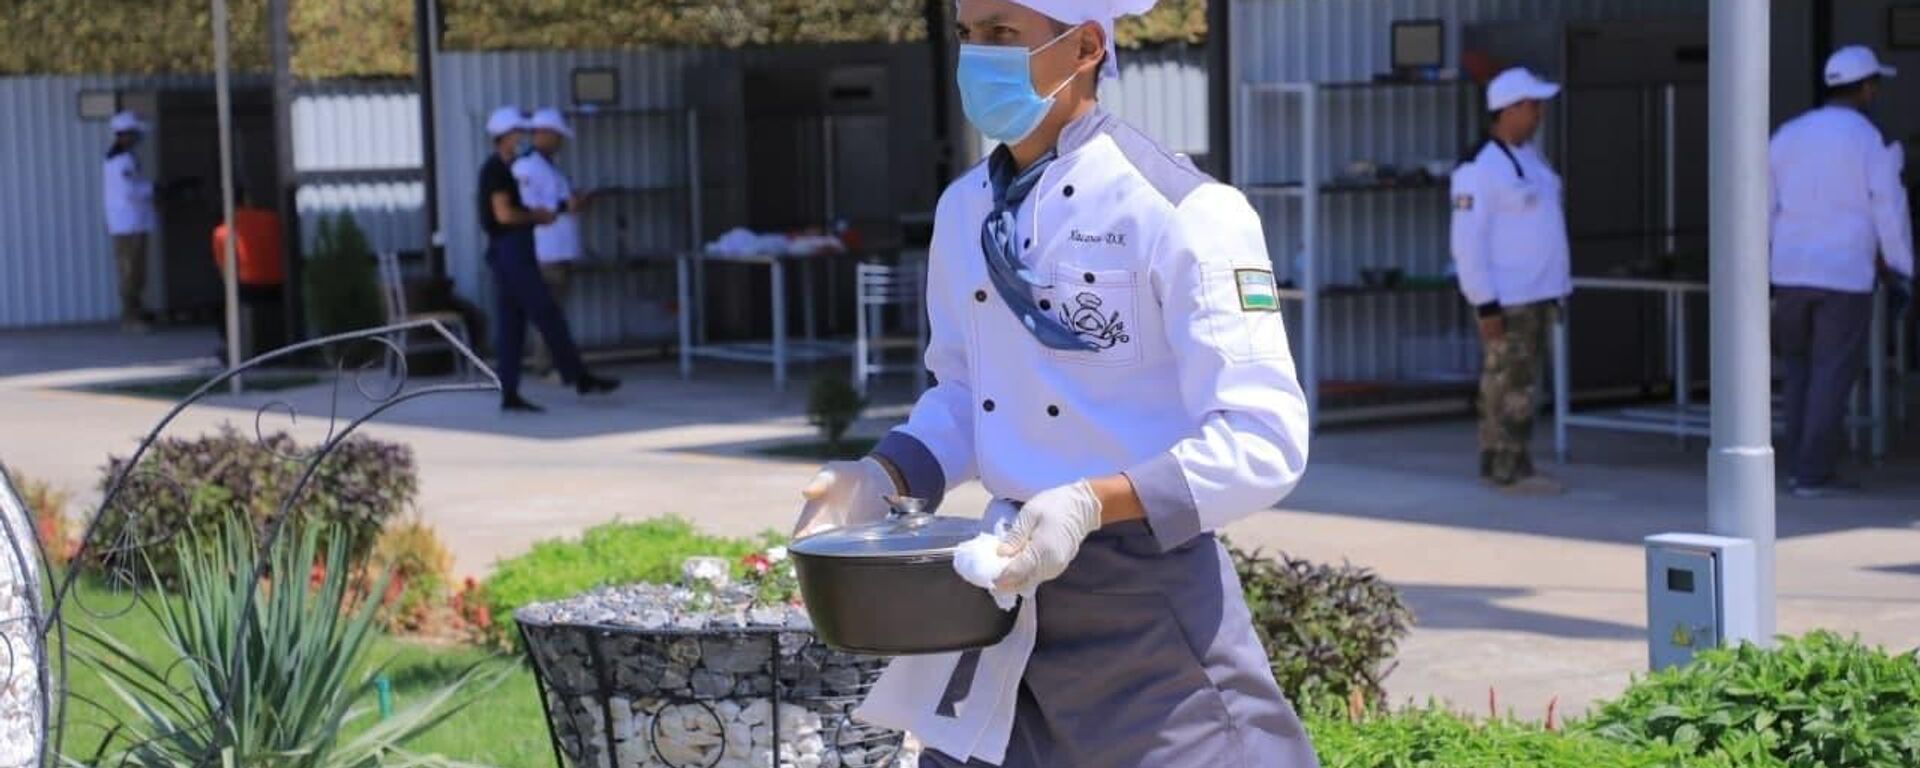 Узбекские военные повара заняли первое место в промежуточном этапе соревнований Полевая кухня.  - Sputnik Узбекистан, 1920, 27.08.2021